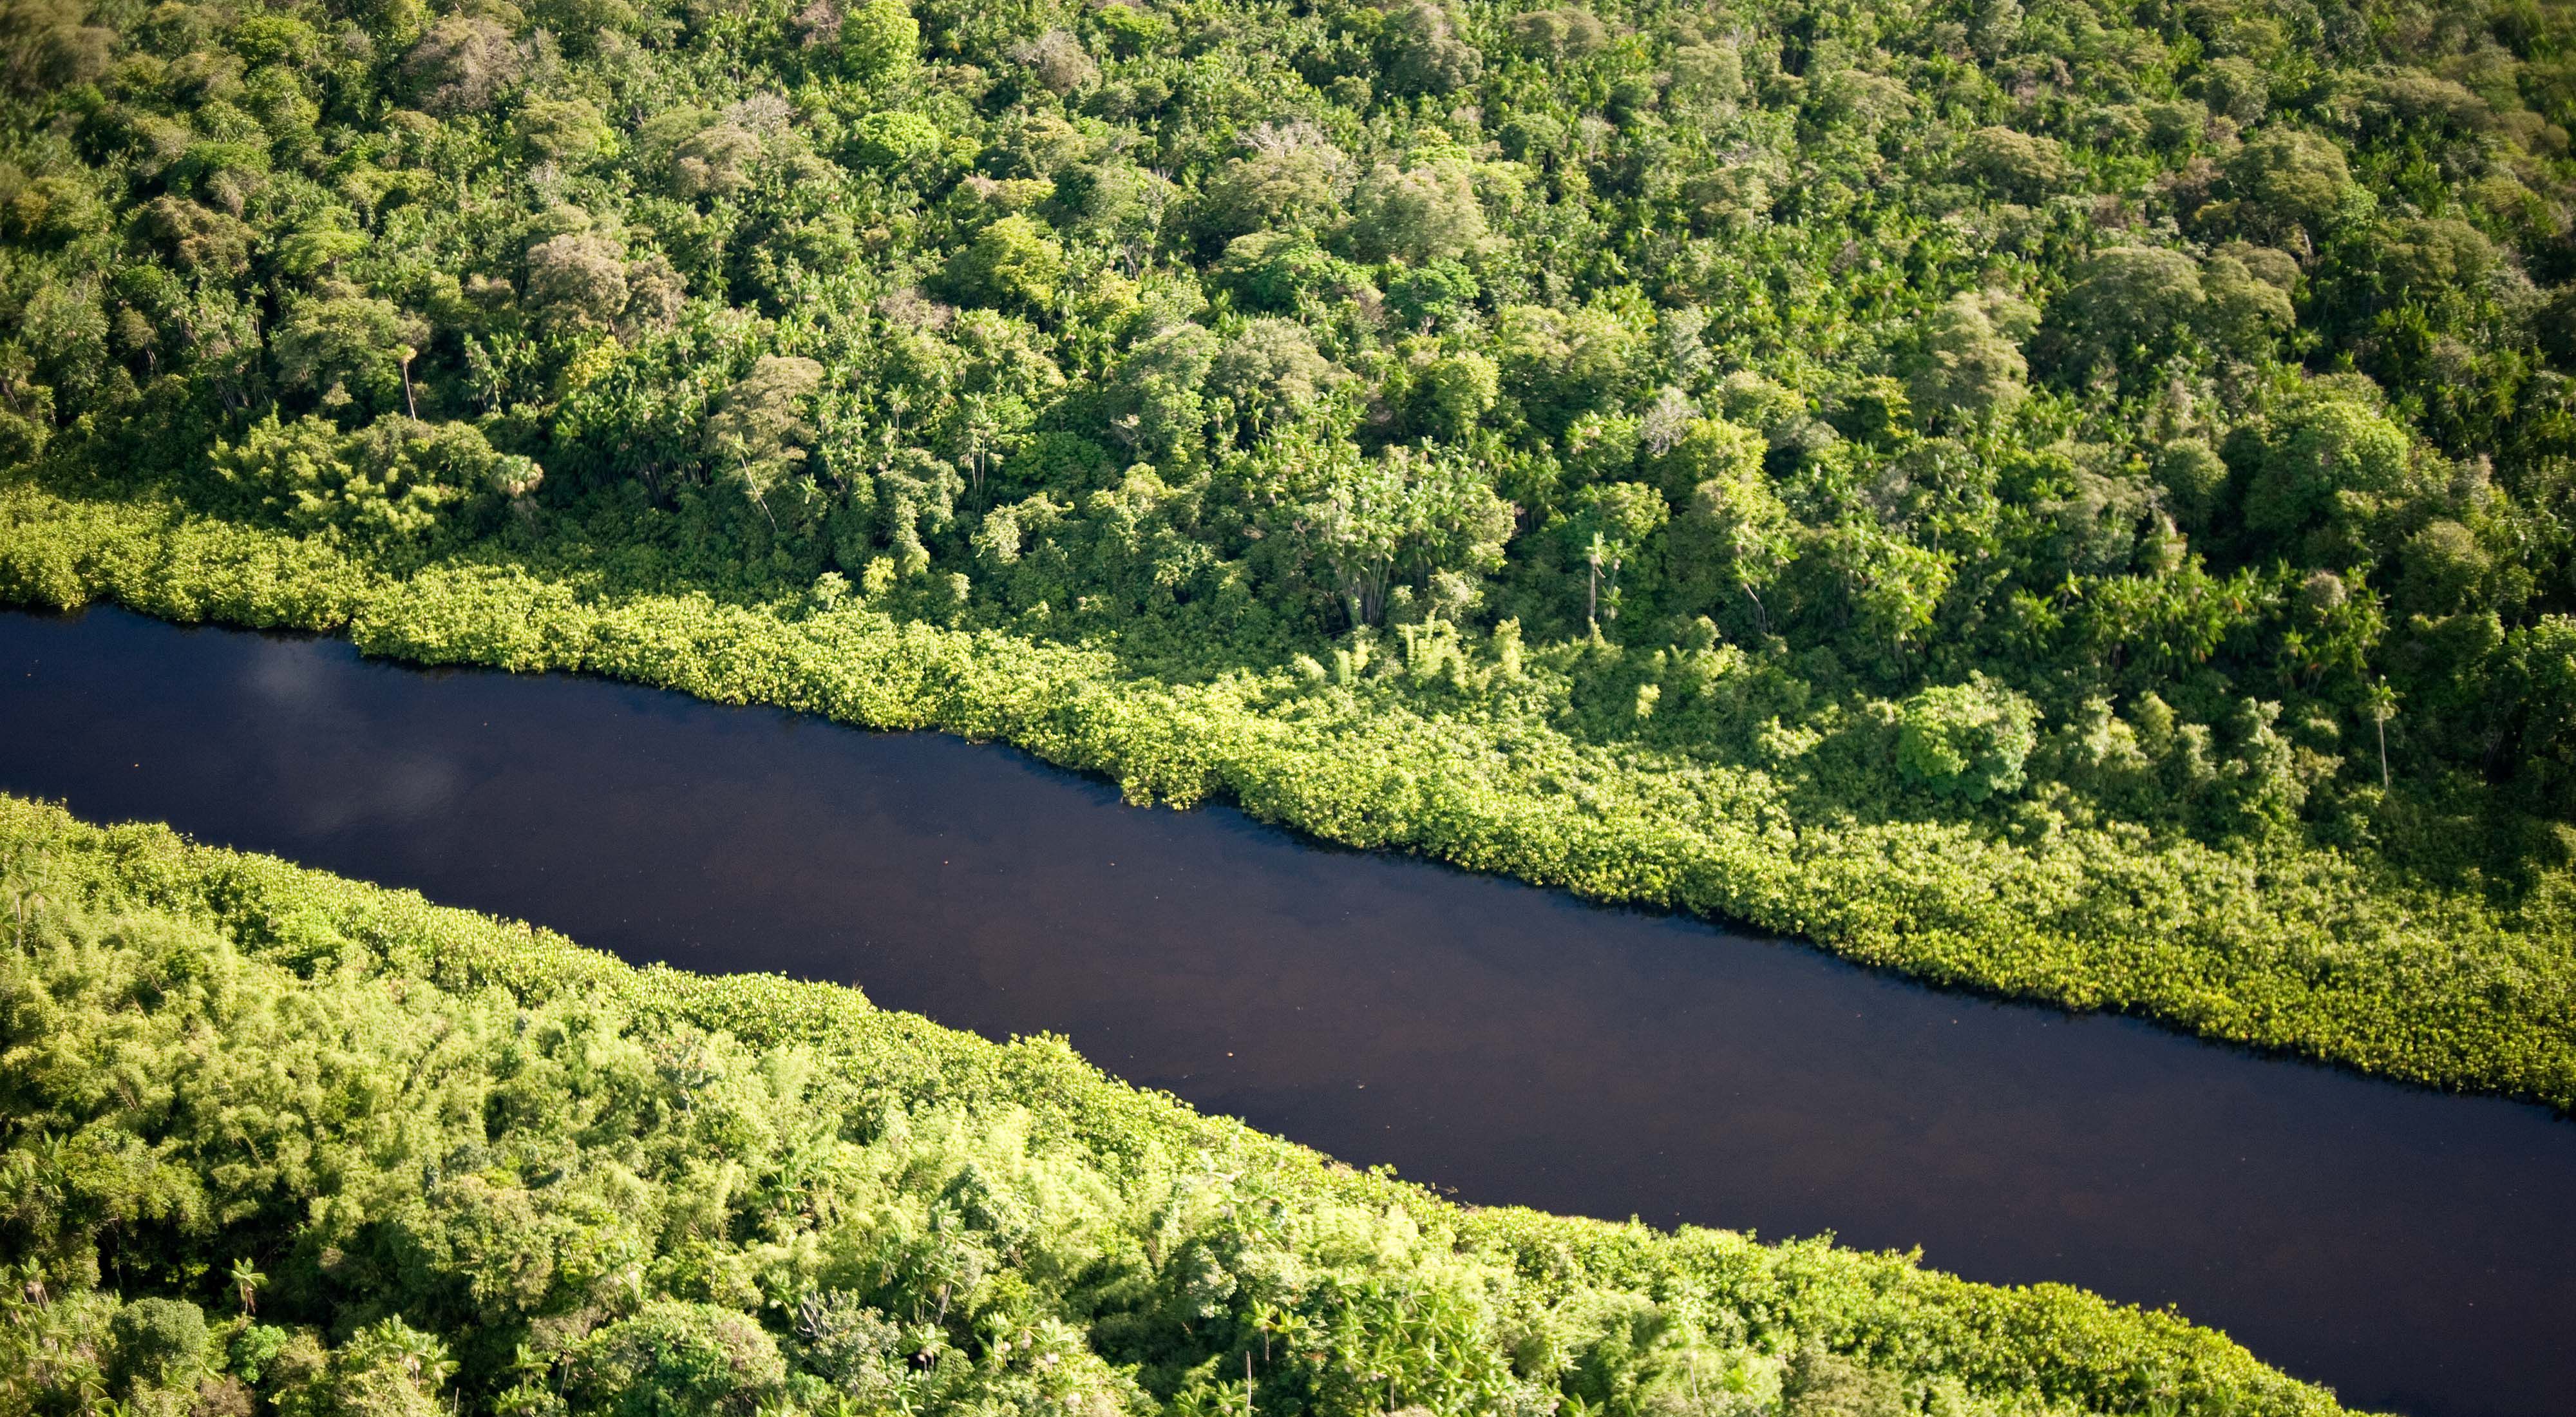  Vista aérea da extensa região indígena de Oiapaque, na Amazônia, Brasil.